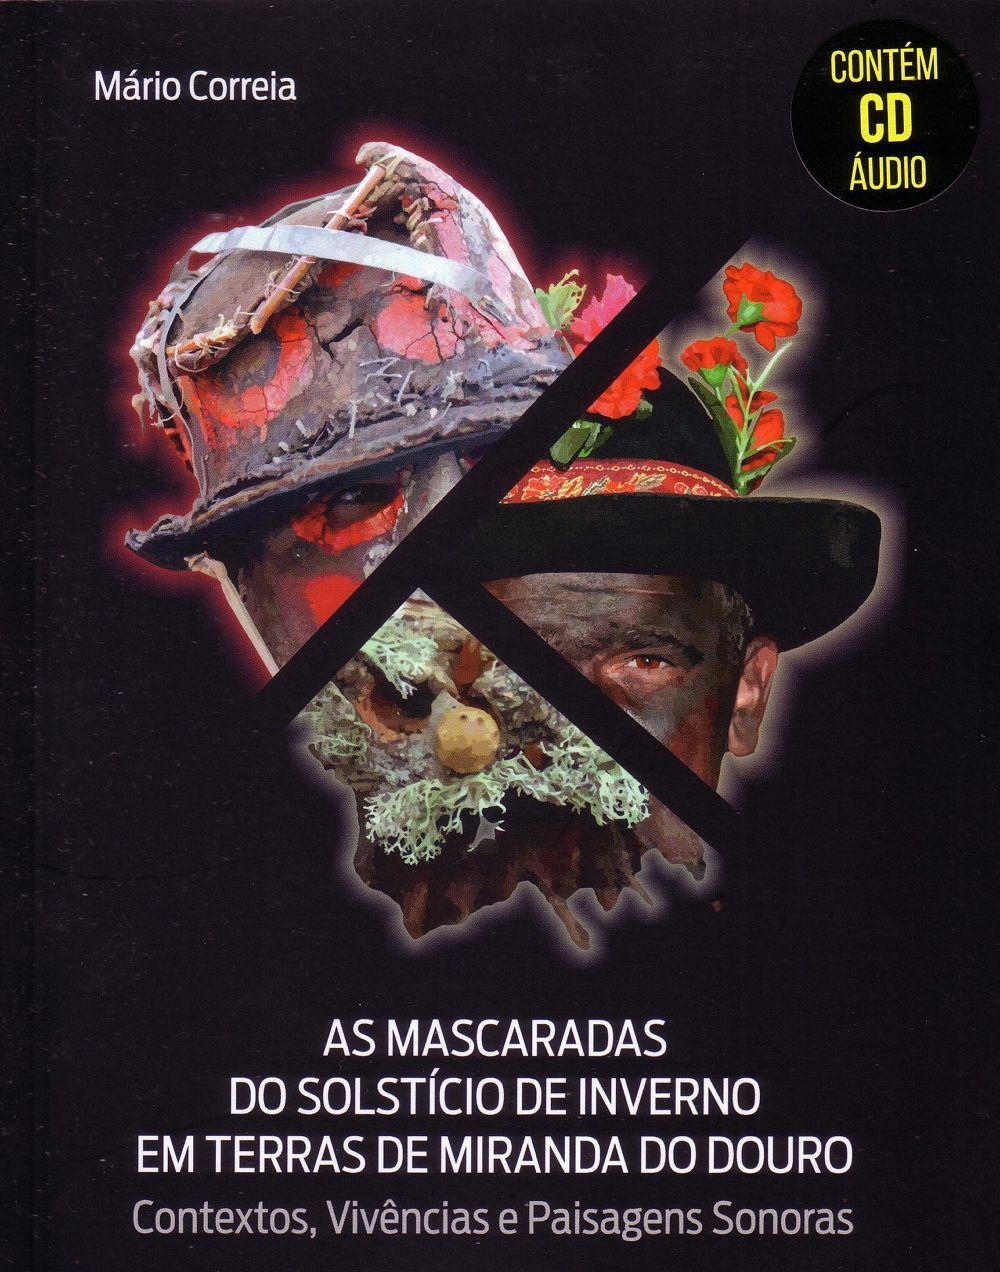 Máscaras dos Rituais de Inverno da Terra de Miranda publicadas em livro e CD